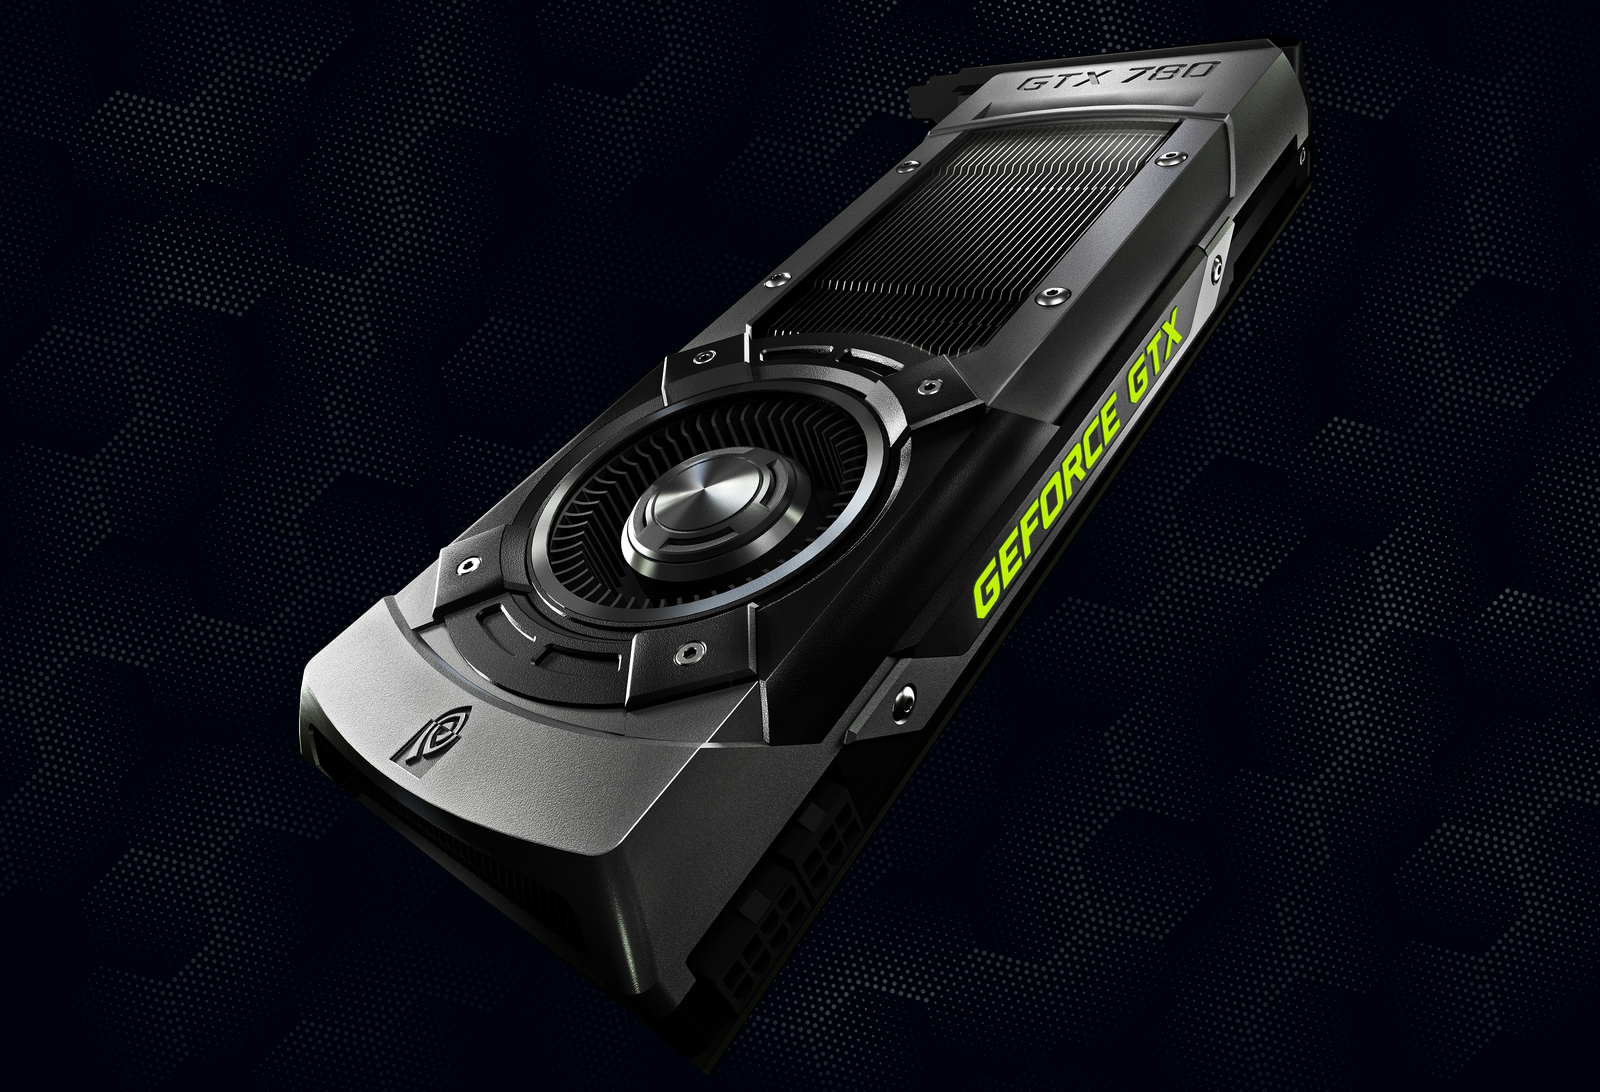 Immagine pubblicata in relazione al seguente contenuto: NVIDIA annuncia la video card high-end GeForce GTX 780 | Nome immagine: news19574_NVIDIA-GeForce-GTX-780_1.jpg